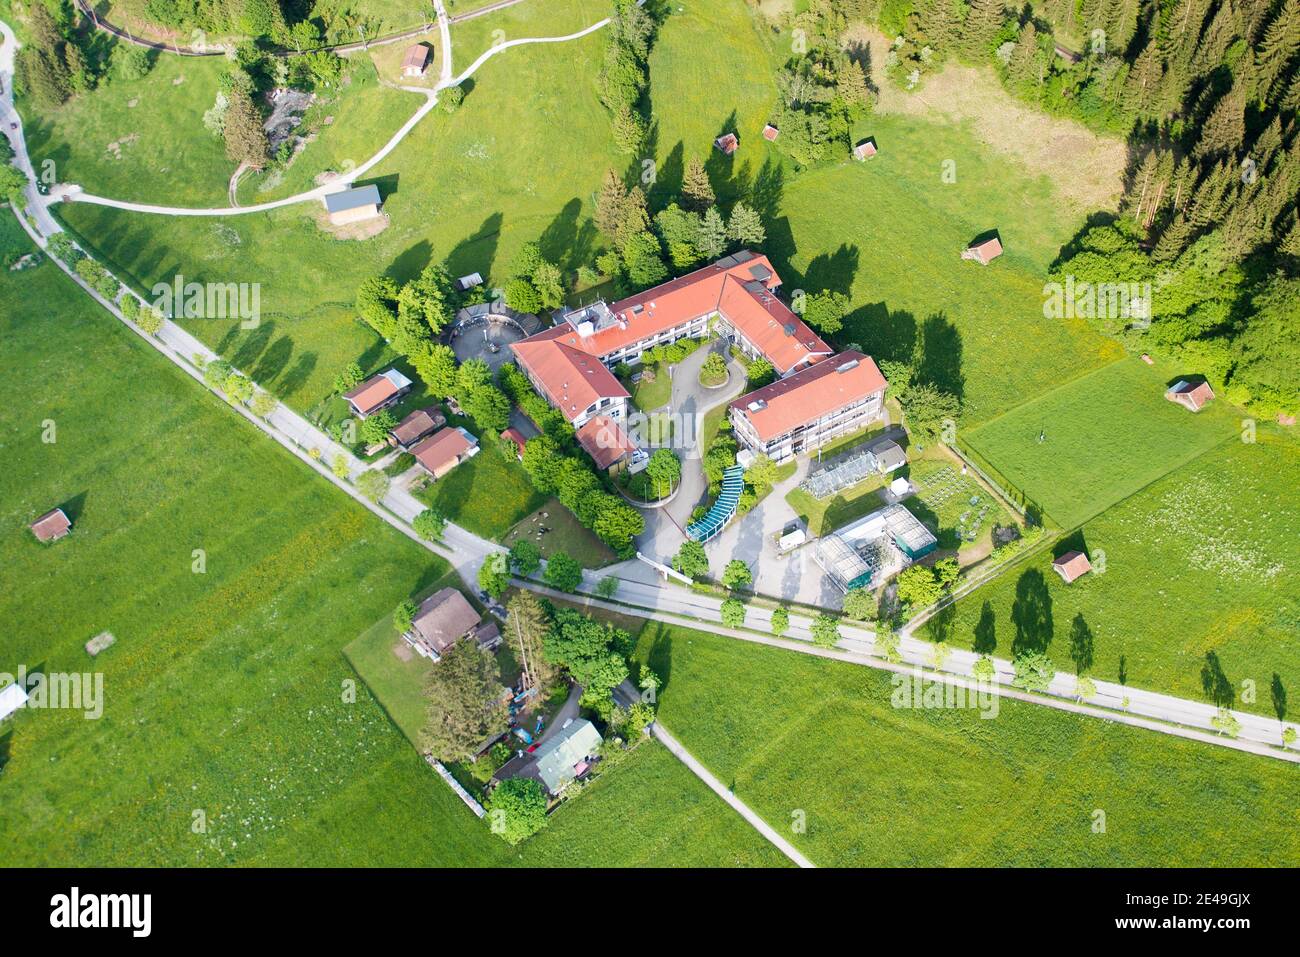 KIT, istituto di ricerca, Garmisch-Partenkirchen, vista aerea, Werdenfelser Land, Oberland, Baviera, Germania Foto Stock